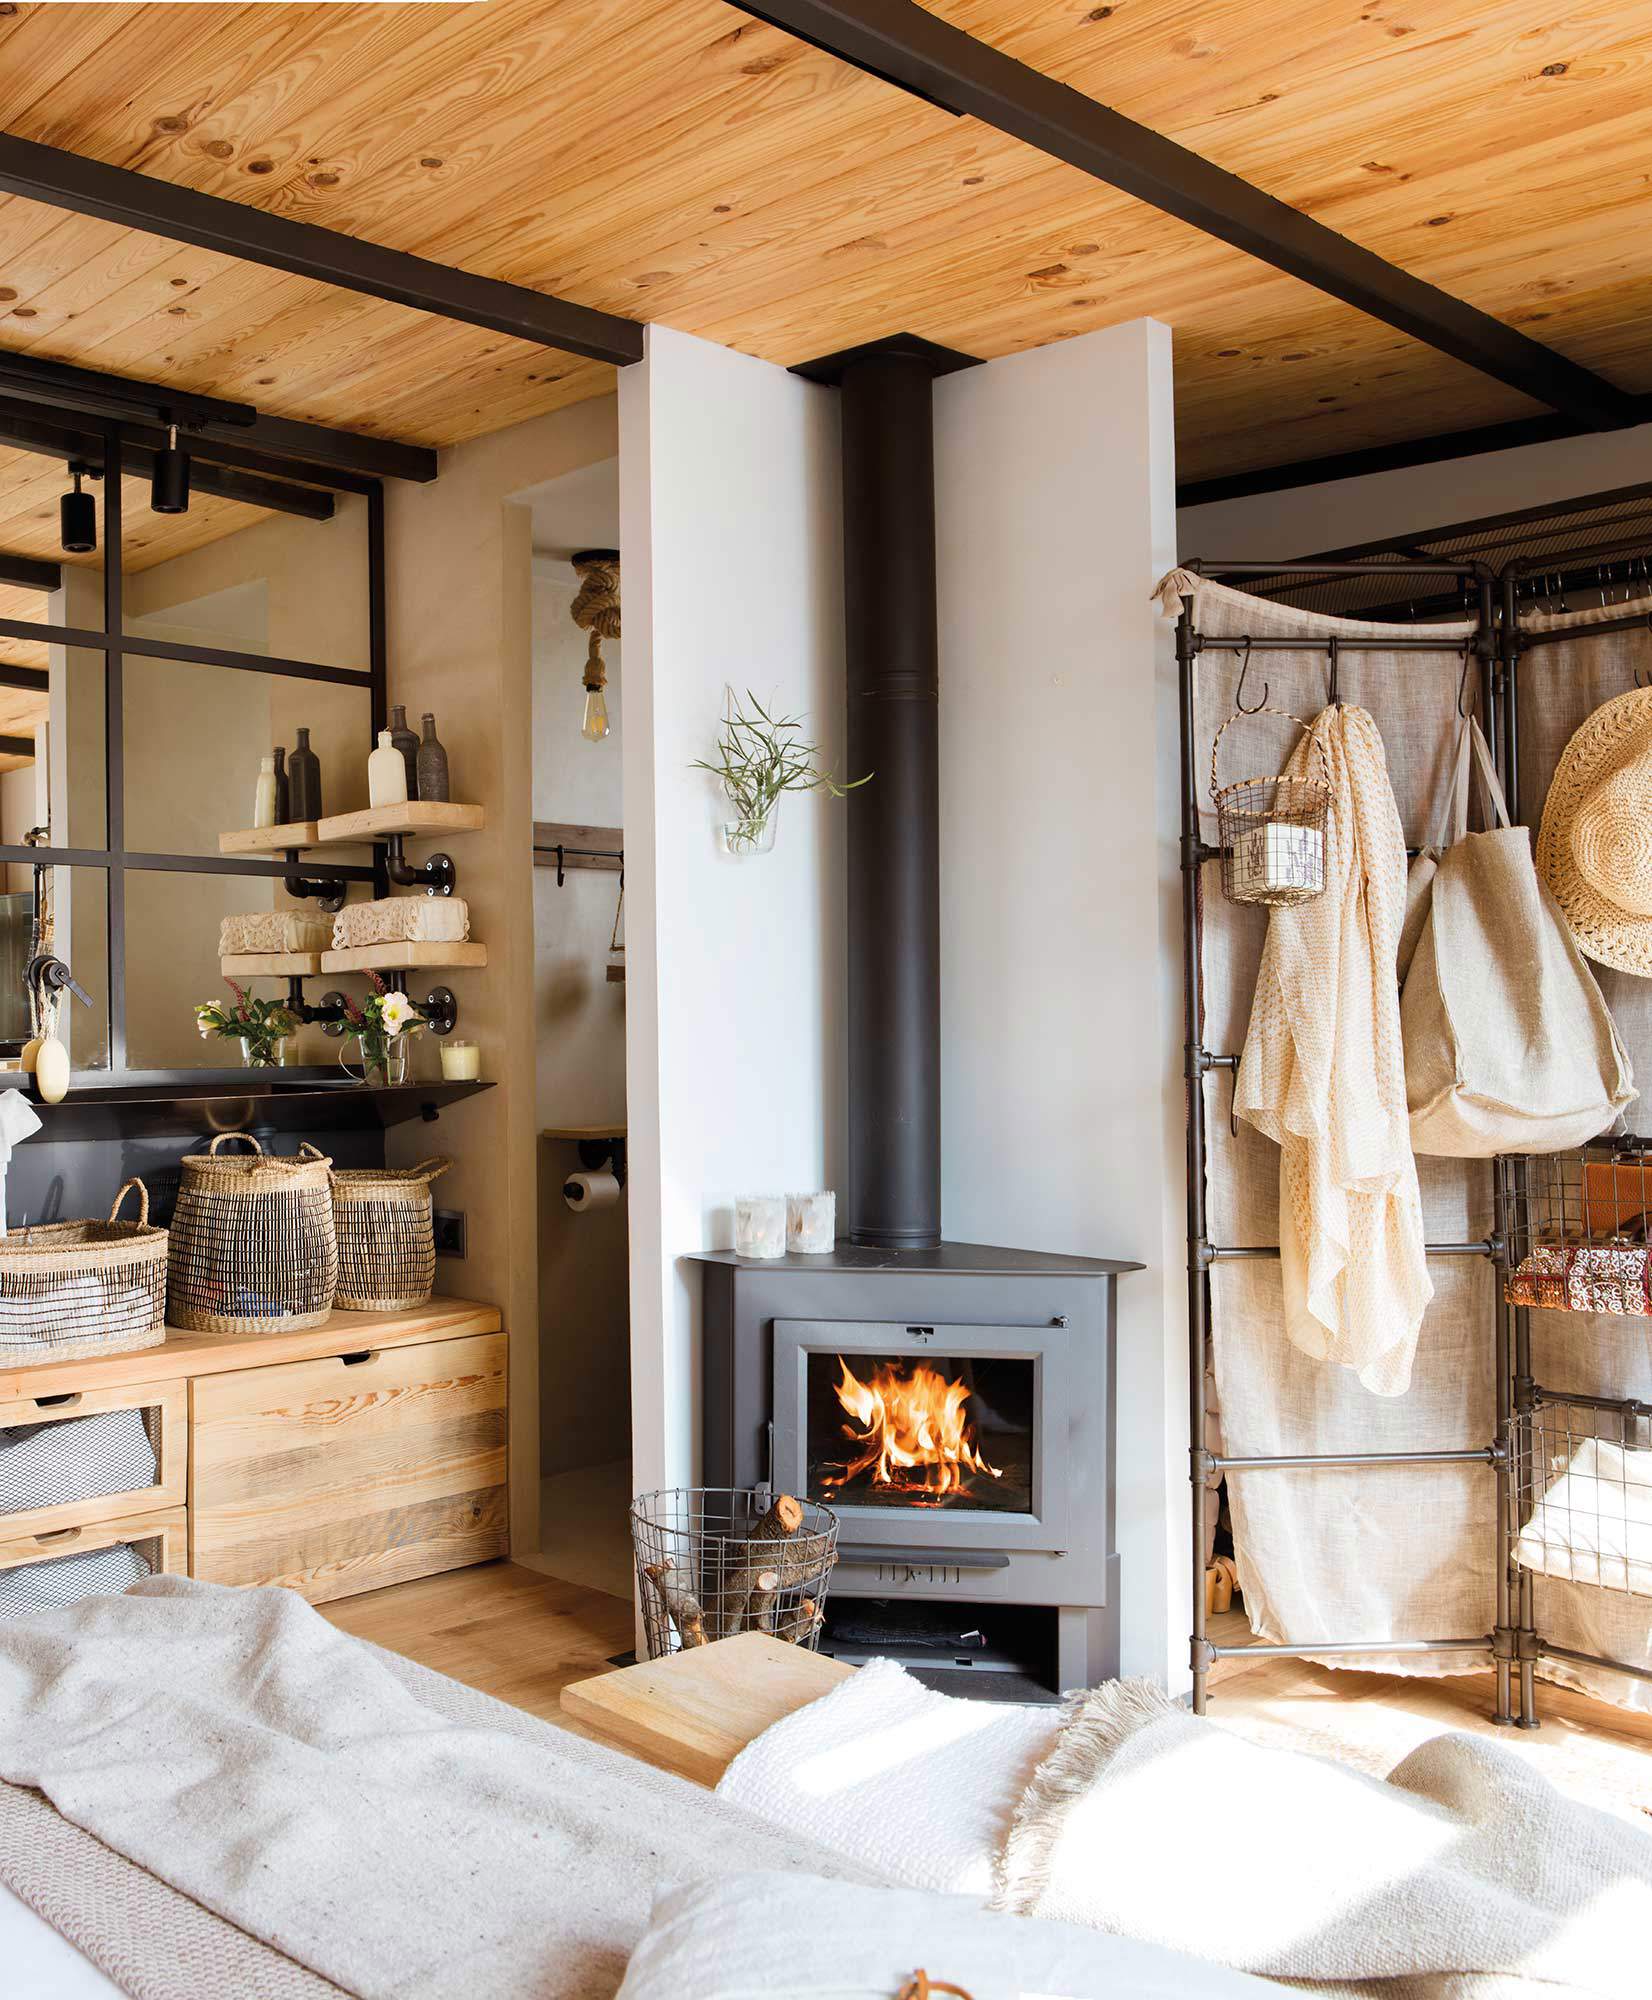 Un dormitorio de madera con chimenea.